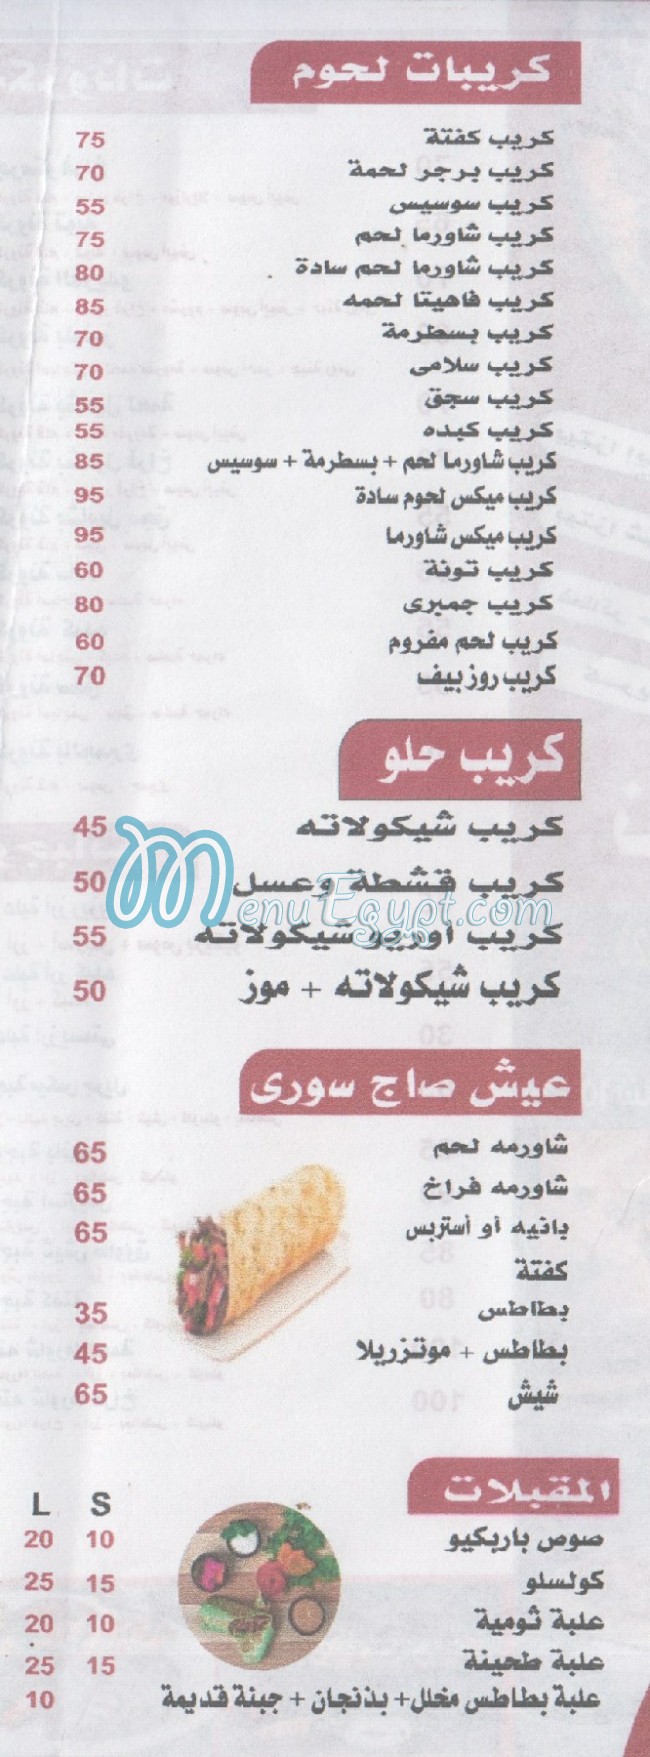 Nour El Sabah delivery menu